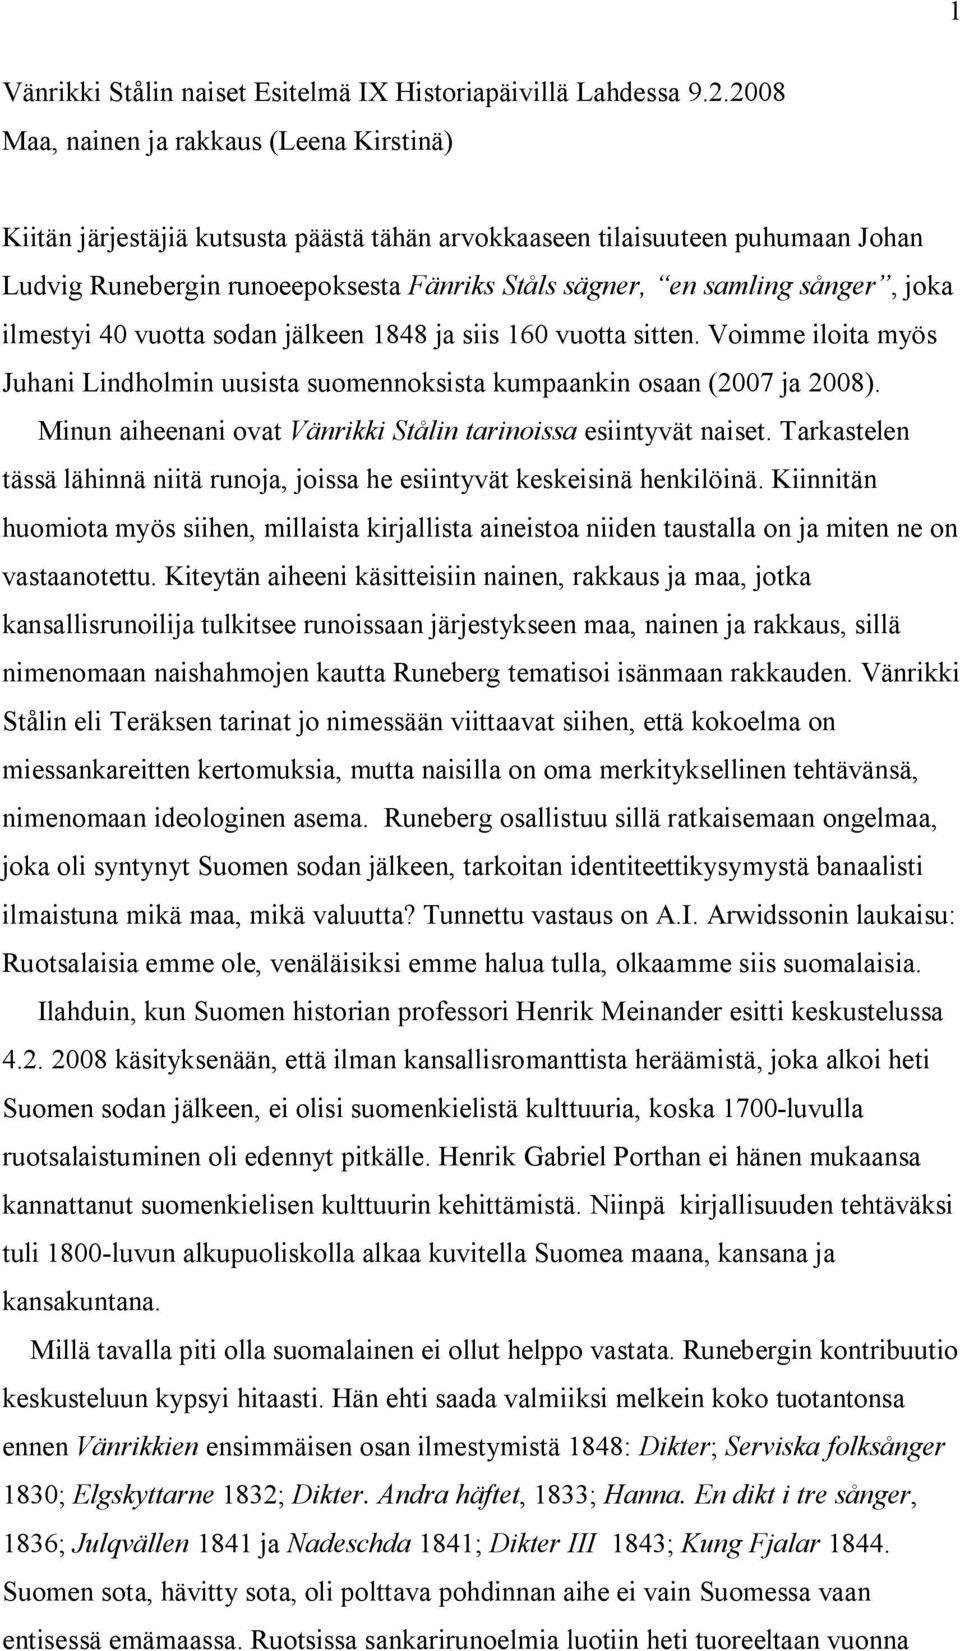 sånger, joka ilmestyi 40 vuotta sodan jälkeen 1848 ja siis 160 vuotta sitten. Voimme iloita myös Juhani Lindholmin uusista suomennoksista kumpaankin osaan (2007 ja 2008).